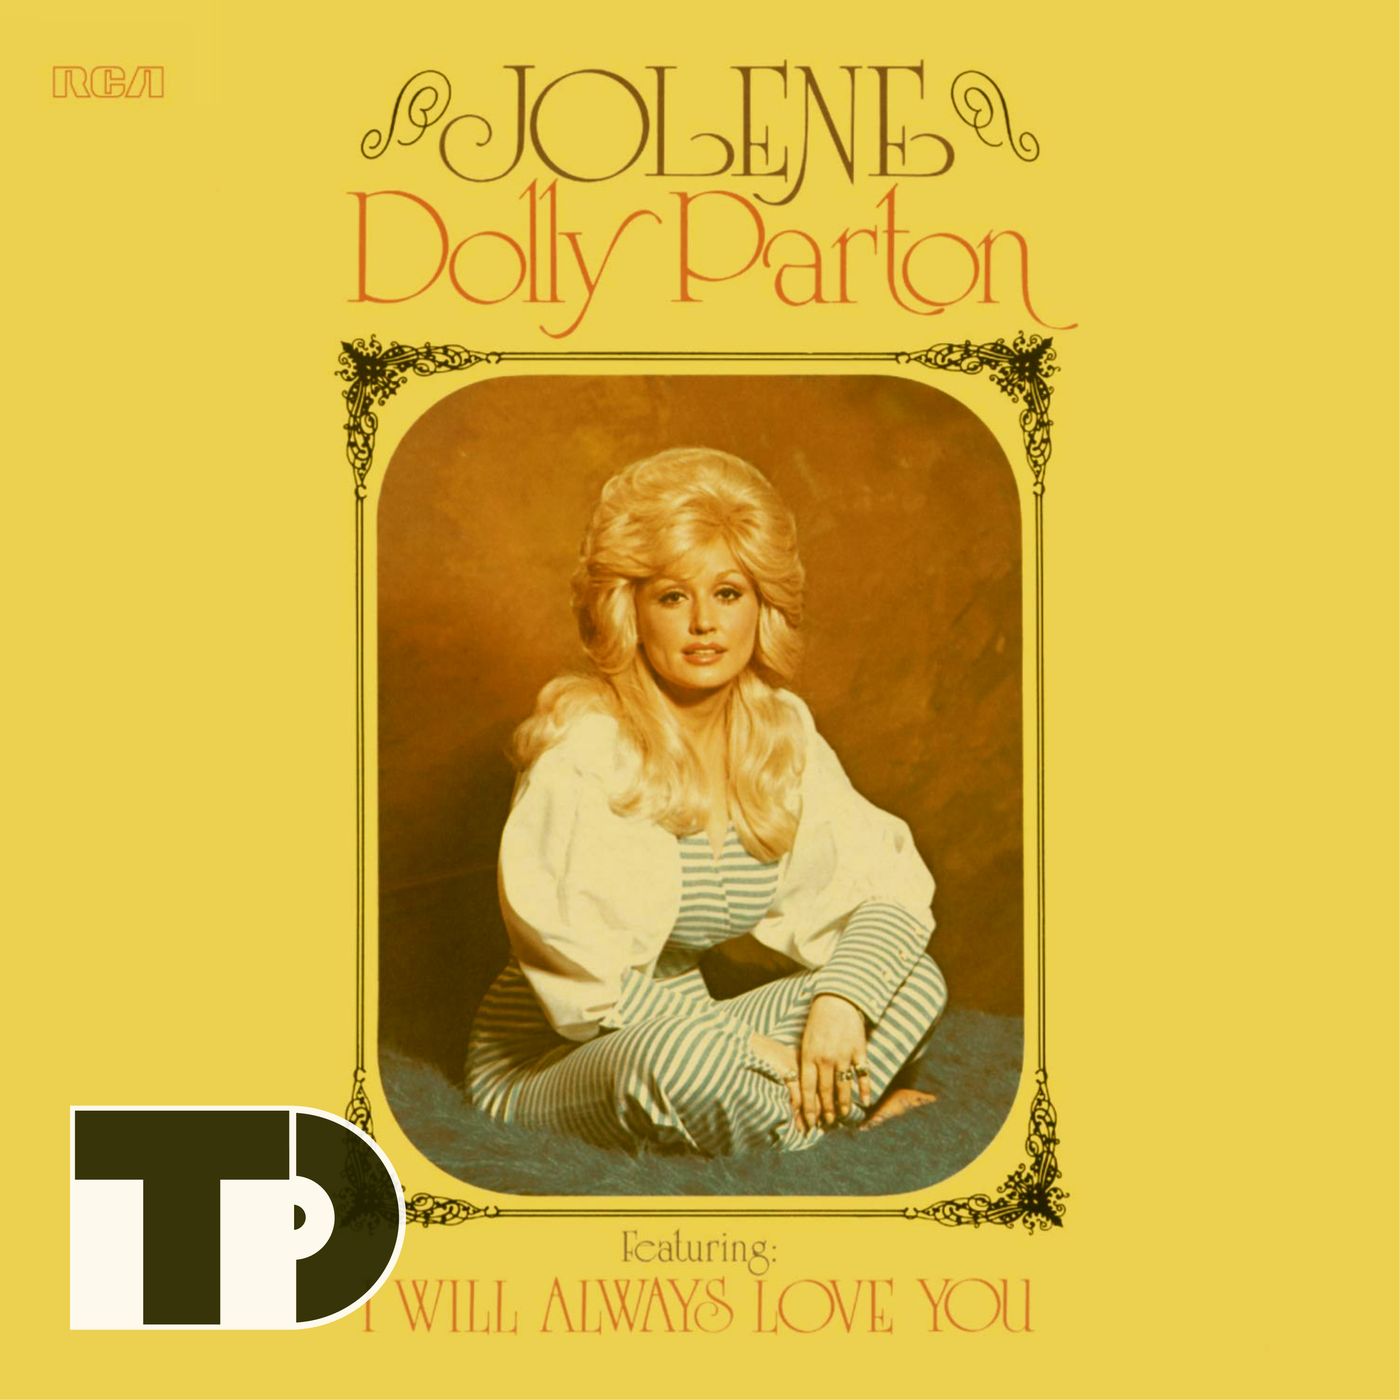 Episode 34: Dolly Parton's "Jolene"